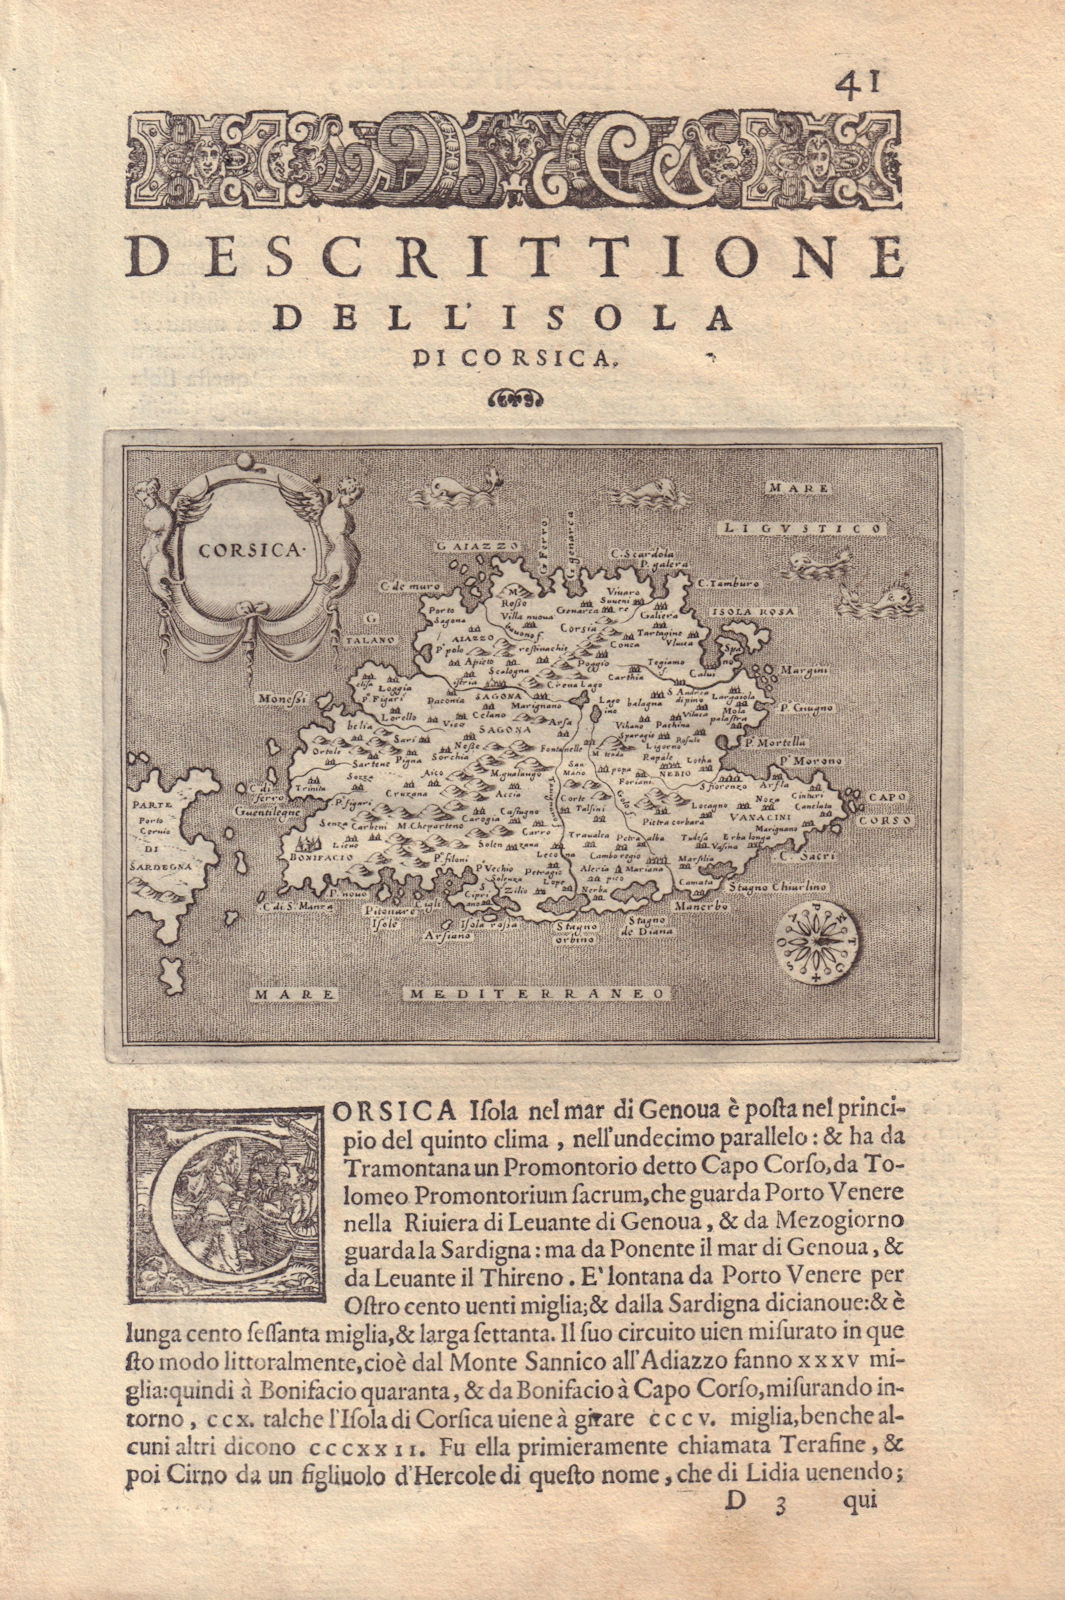 Descrittione dell' Isola di Corsica. PORCACCHI. France 1590 old antique map